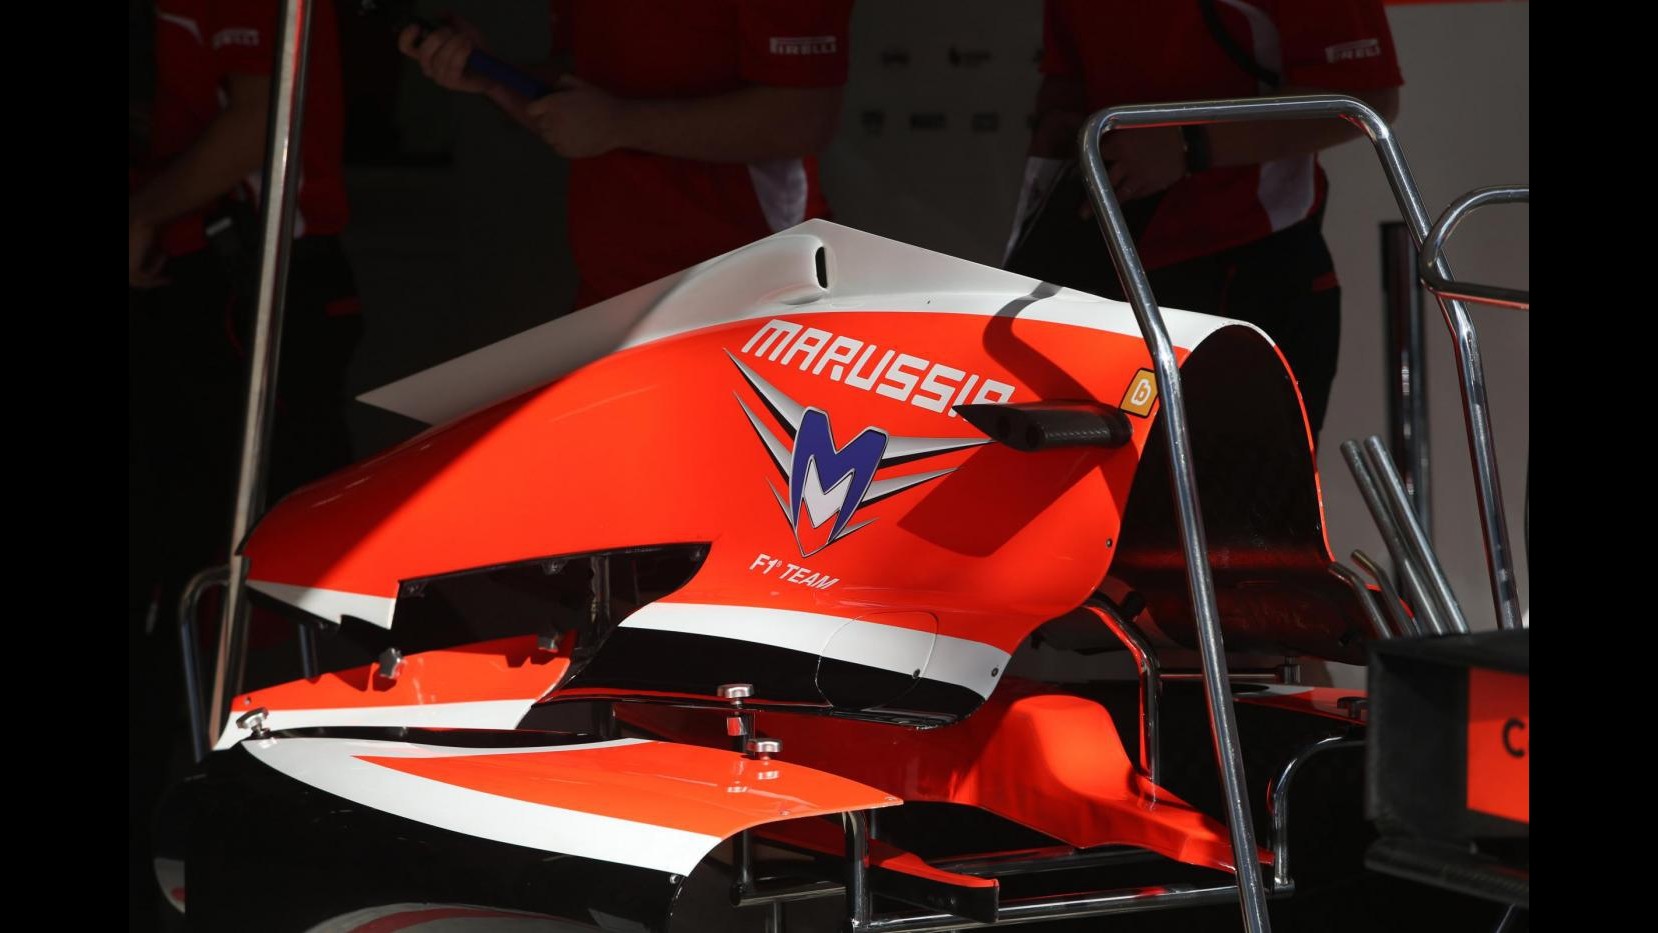 F1, Gp Russia:Bianchi non verrà sostituito, Marussia correrà con una sola auto